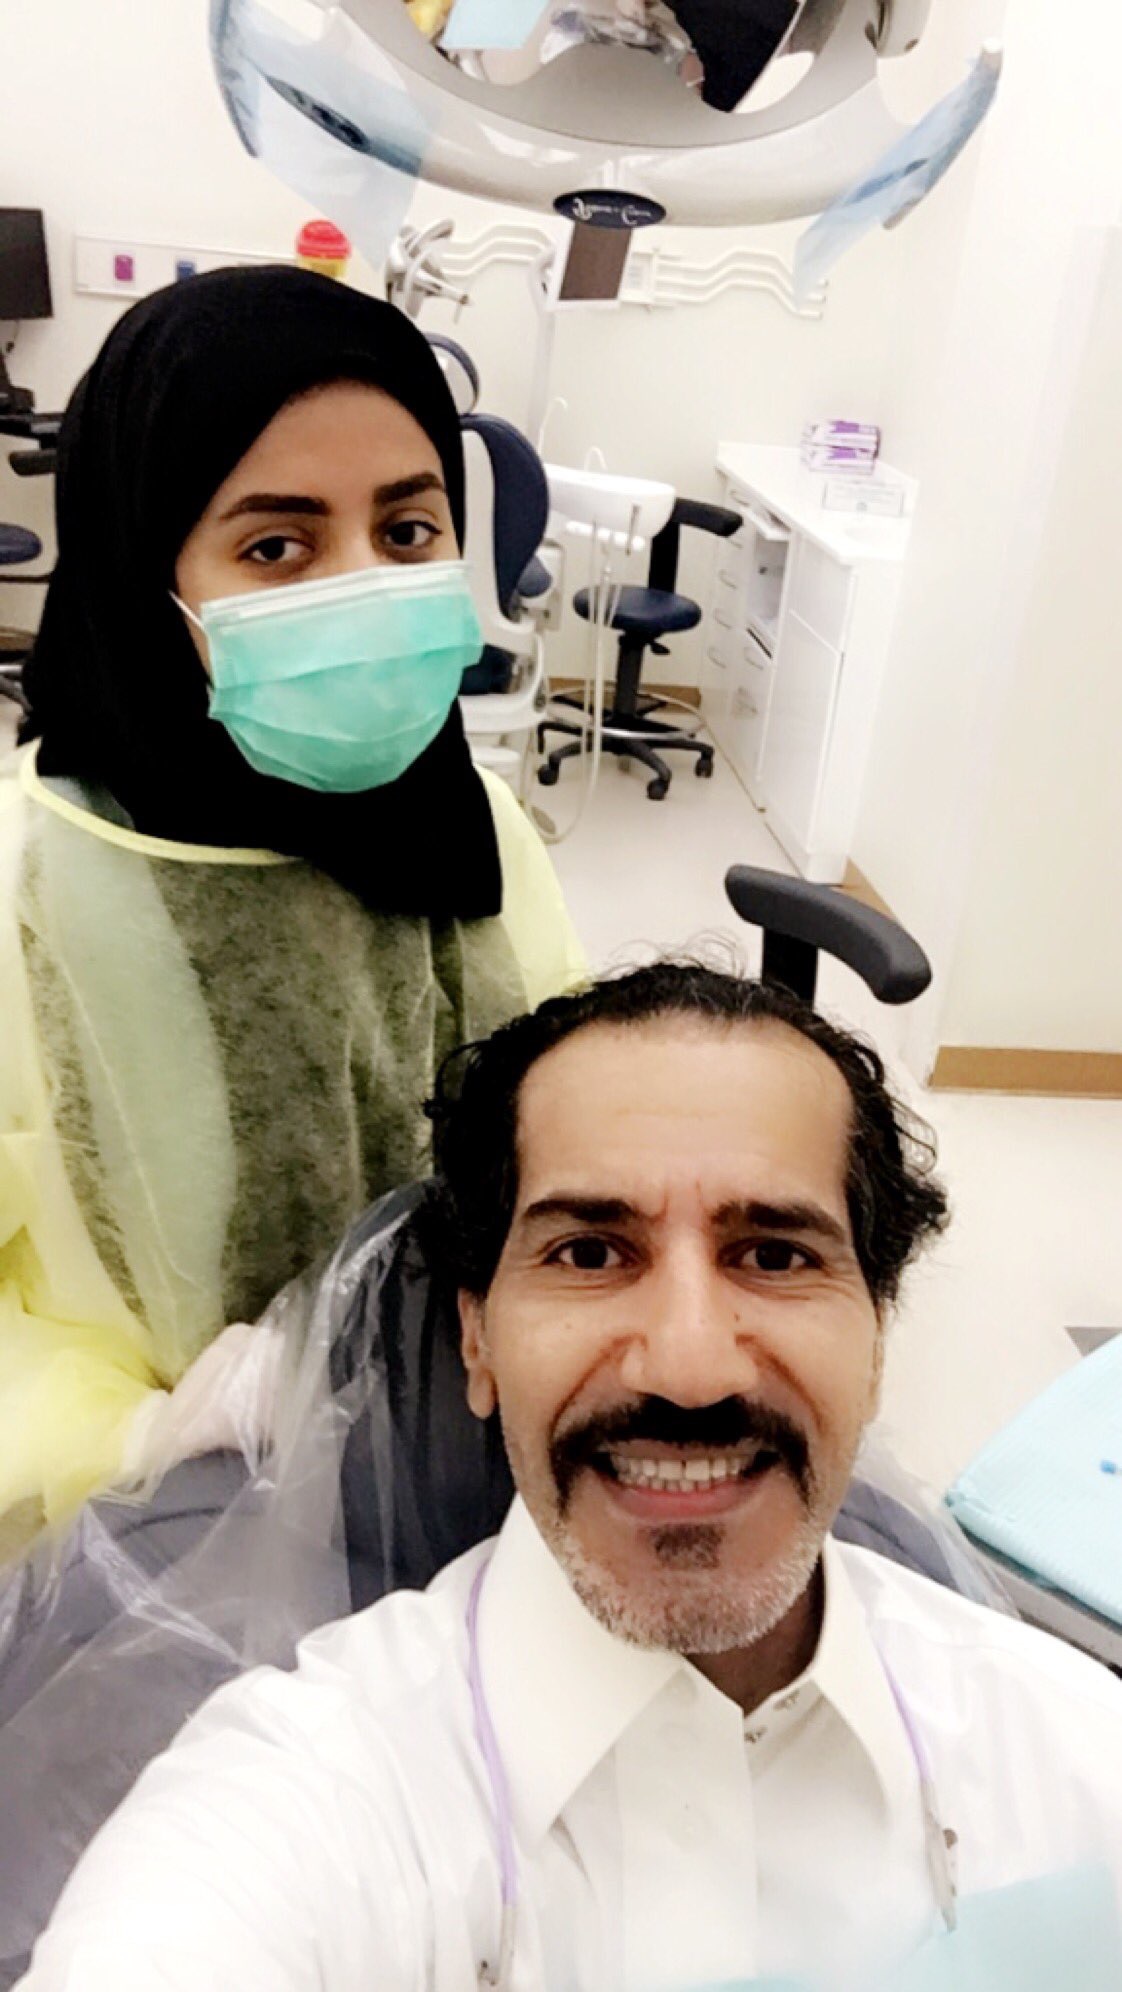 صورة مؤثرة وتغريدة من طبيبة سعودية تثير مواقع التواصل الاجتماعي